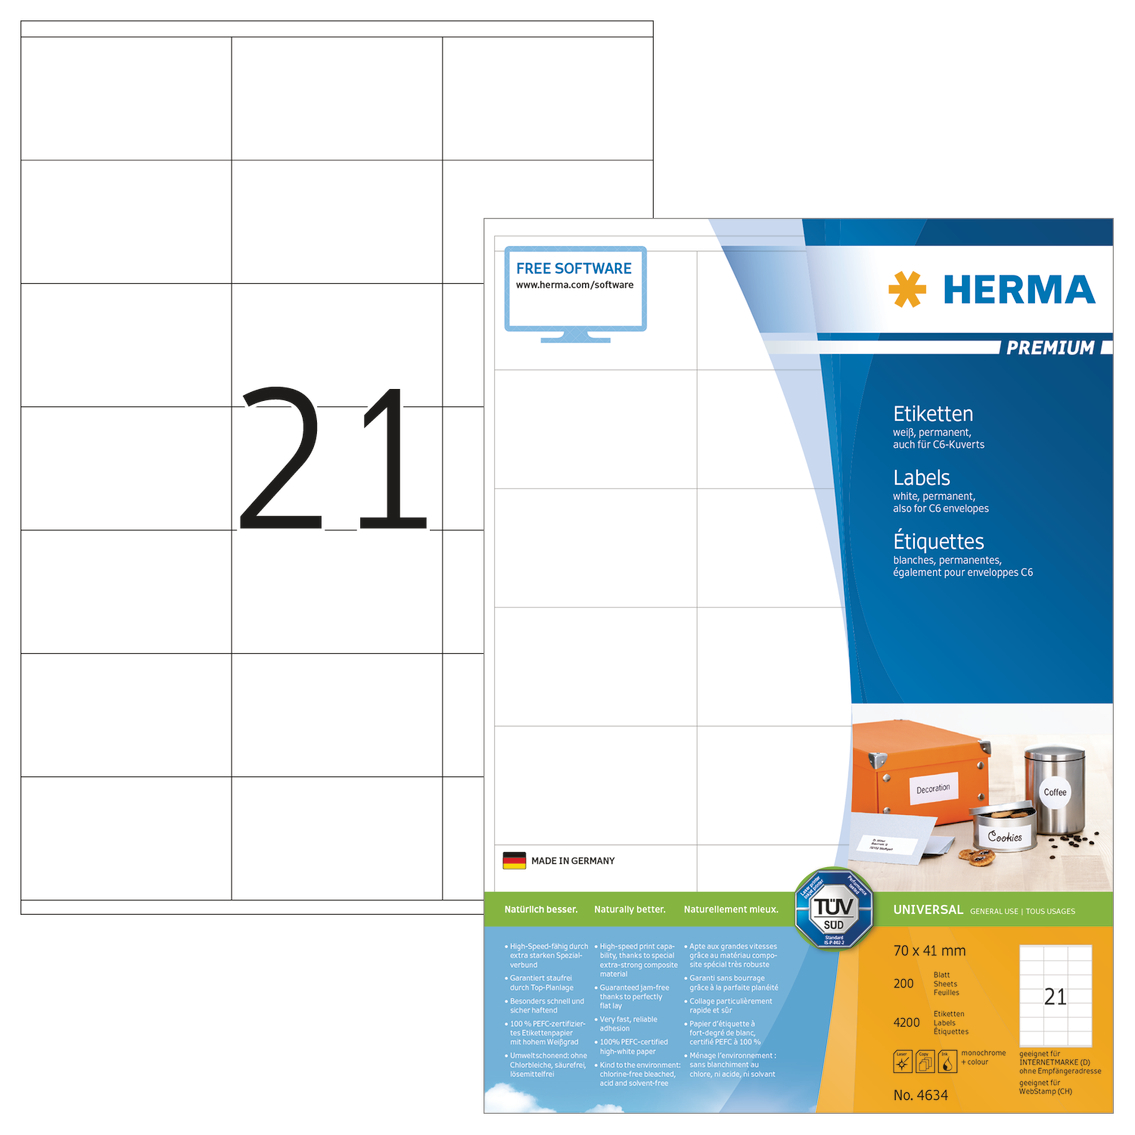 HERMA Etiquettes Premium 70x41mm 4634 blanc 4200 pcs.